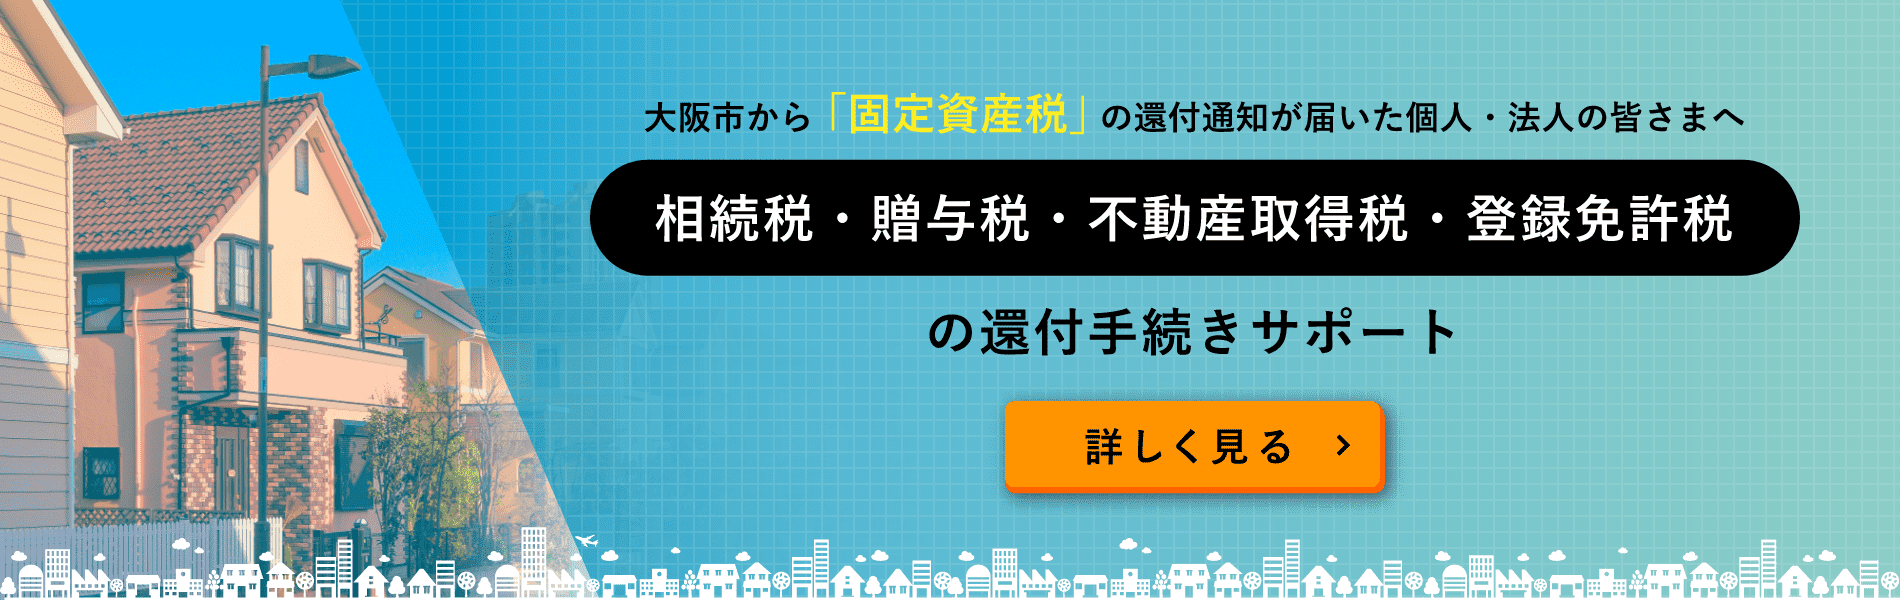 大阪市から「固定資産税」の還付通知書が届いた個人・法人の皆さまへ 相続税・贈与税・不動産取得税・登録免許税 の還付手続きサポート